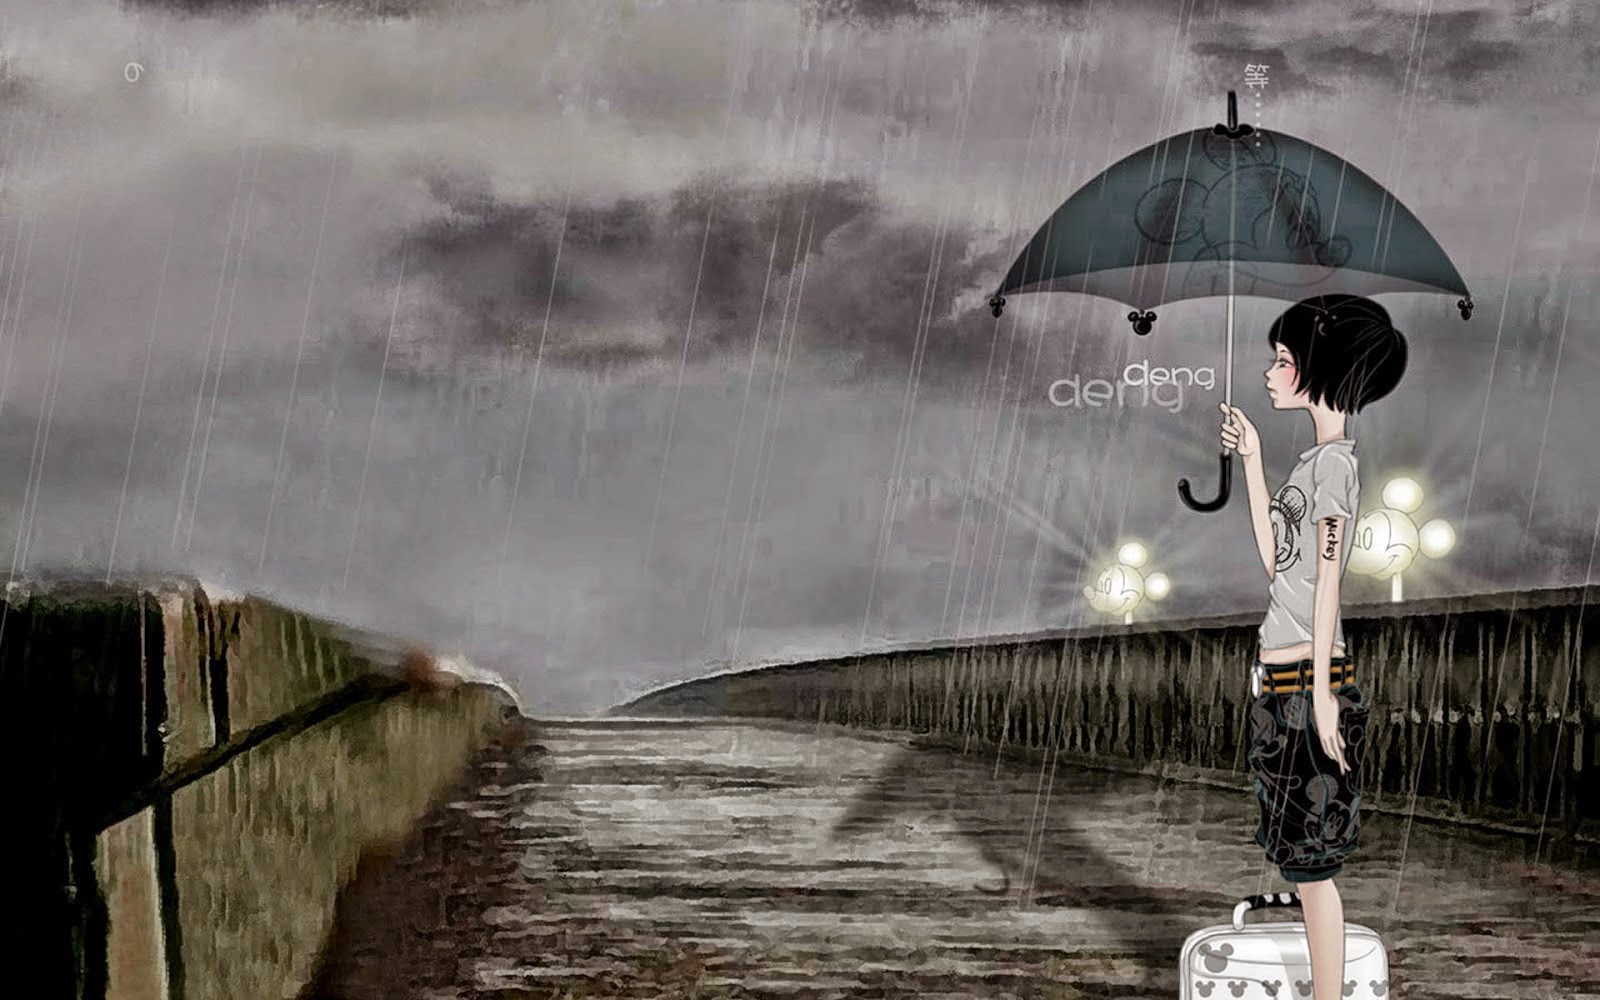 wallpaper perempuan,rain,umbrella,illustration,sky,digital compositing